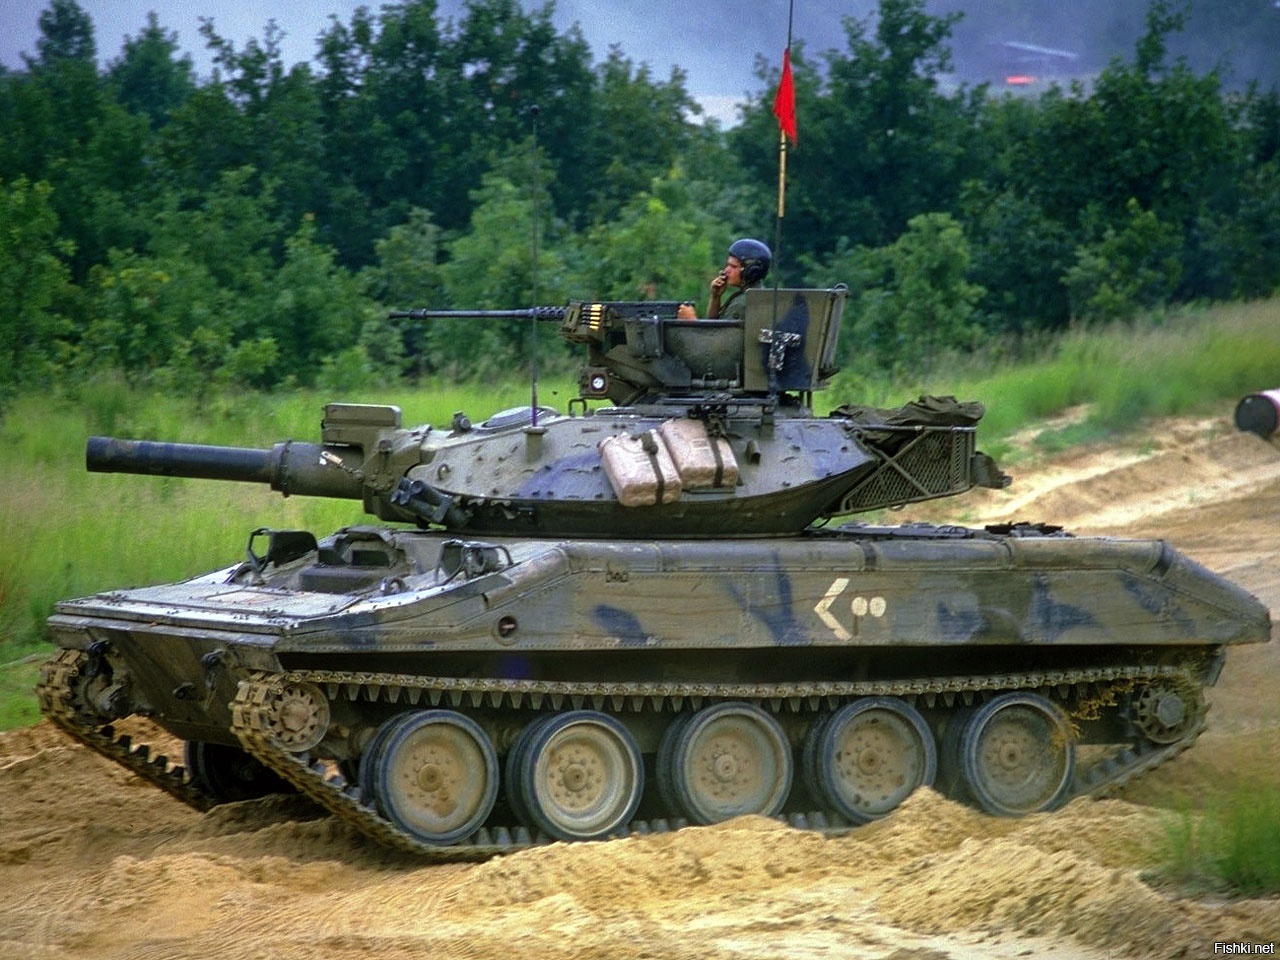 Ис 49. M551 Sheridan т49. М551 Шеридан. М551 танк. М551 TTS.